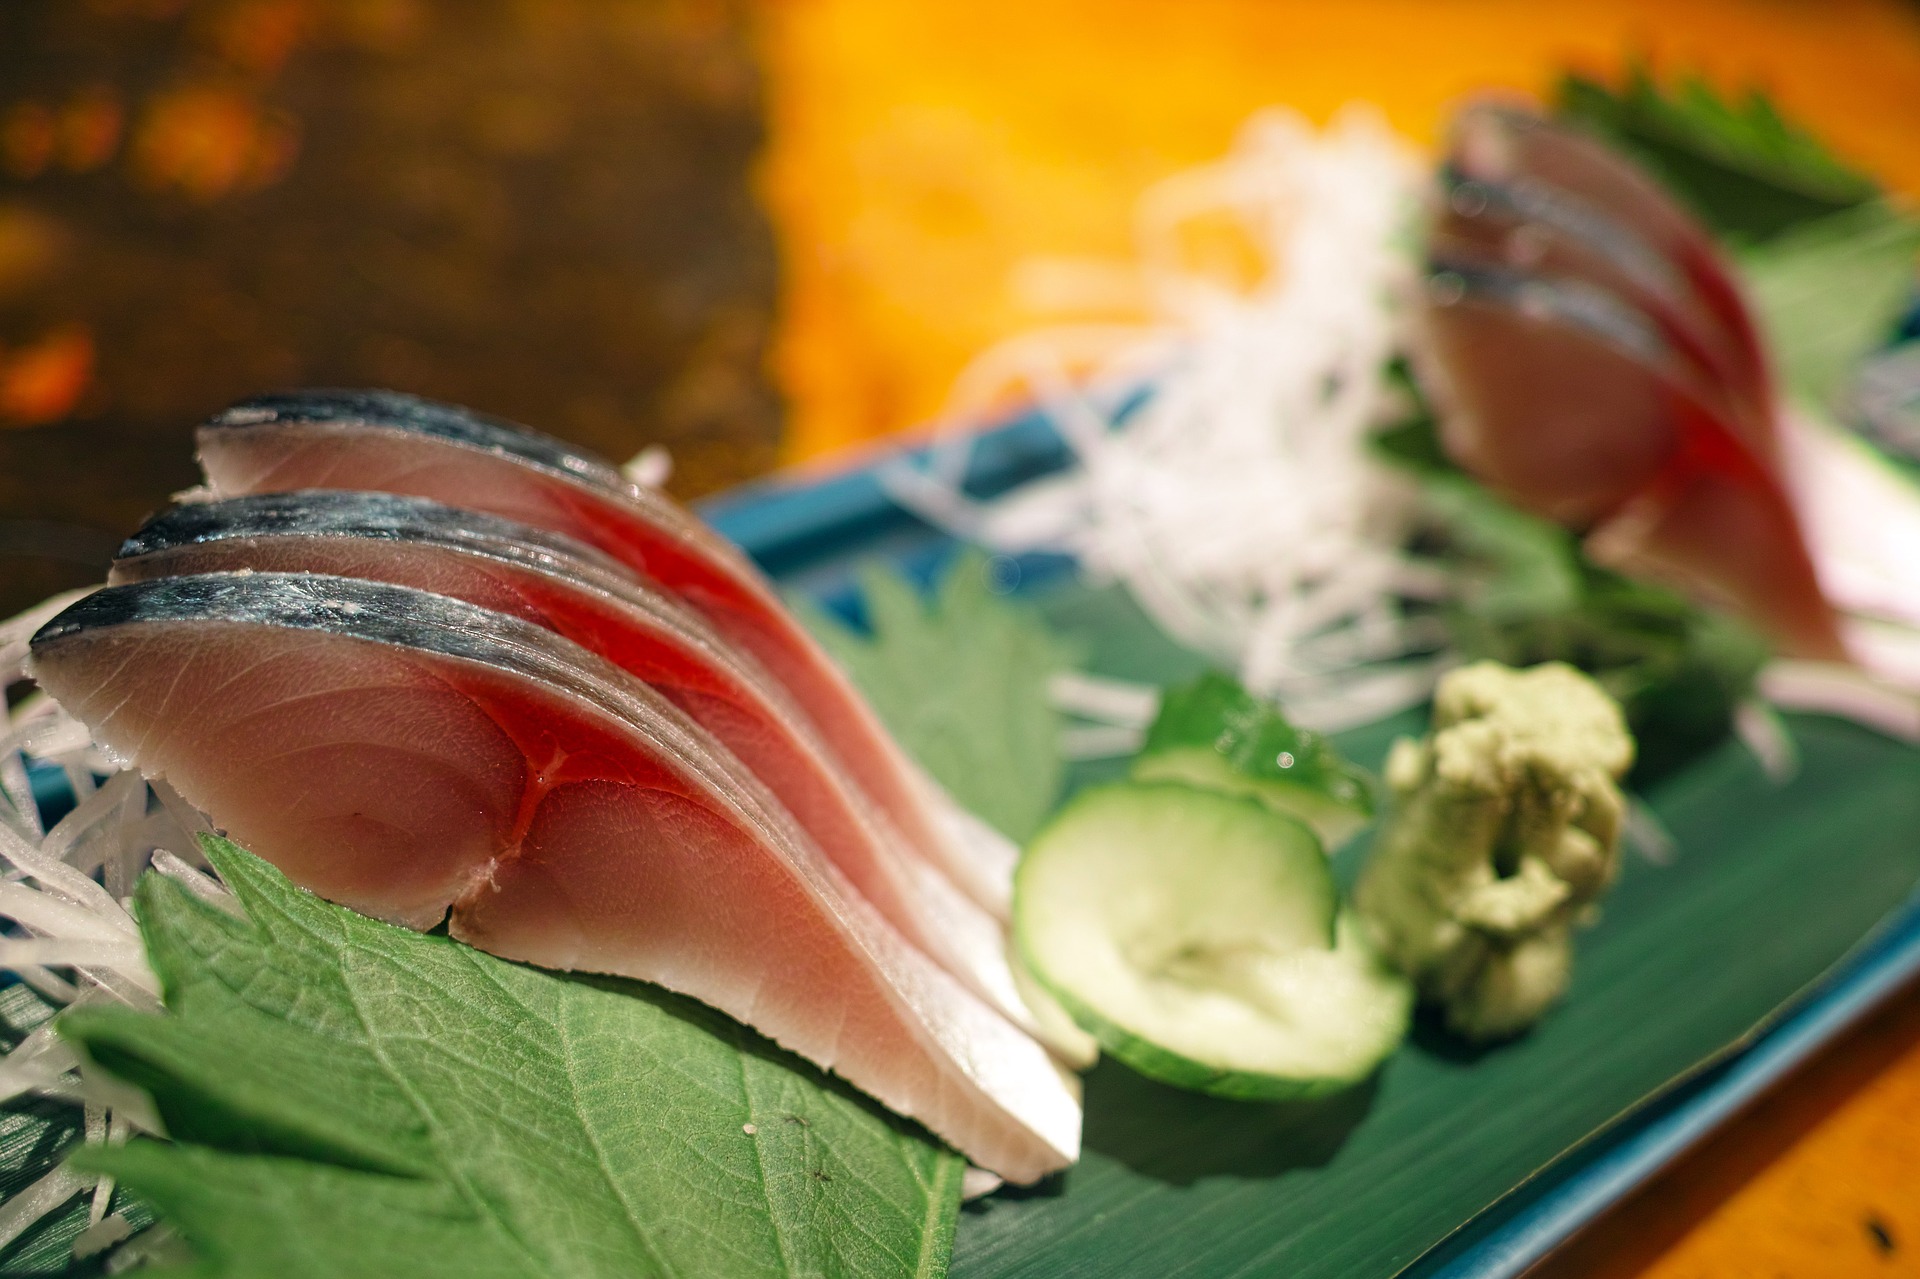 魚油を積極的に摂る日本食のブームで世界的にメタボを予防